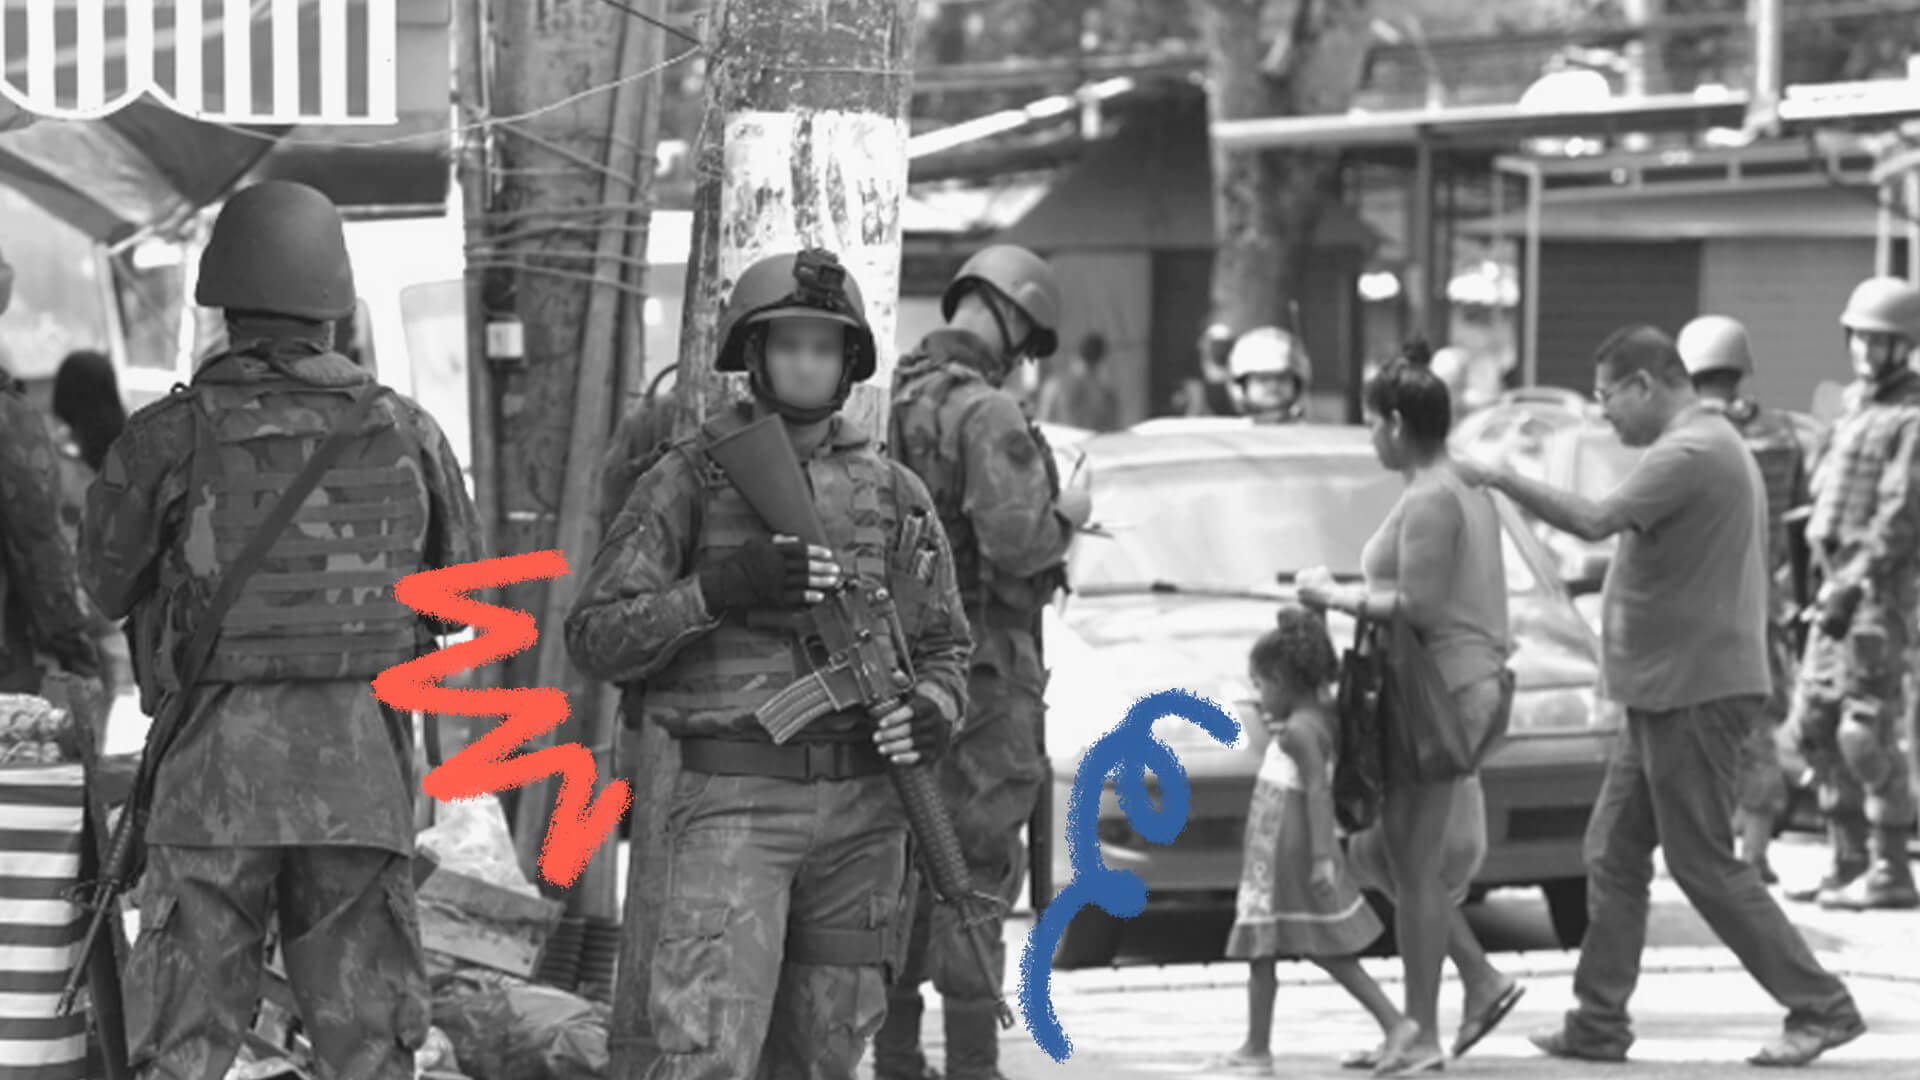 Imagem em preto e branco de um policial fardado segurando um fuzil. A foto ilustra uma matéria sobre operações policiais.